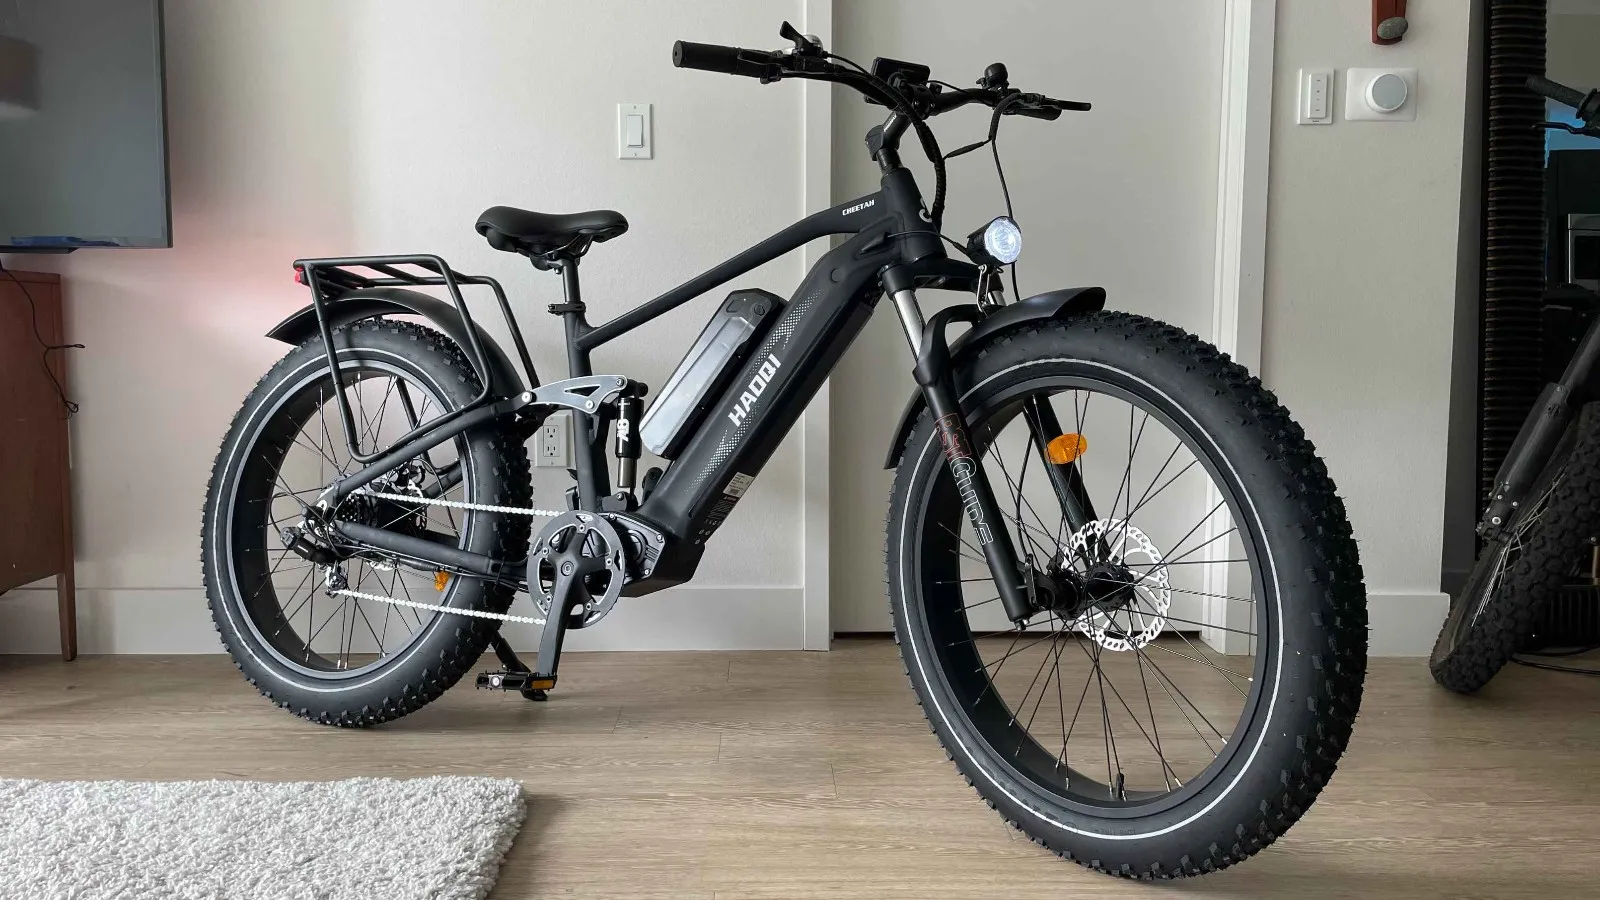 HAOQI Cheetah Electric Bike Review 2023 | Affordable E-bike